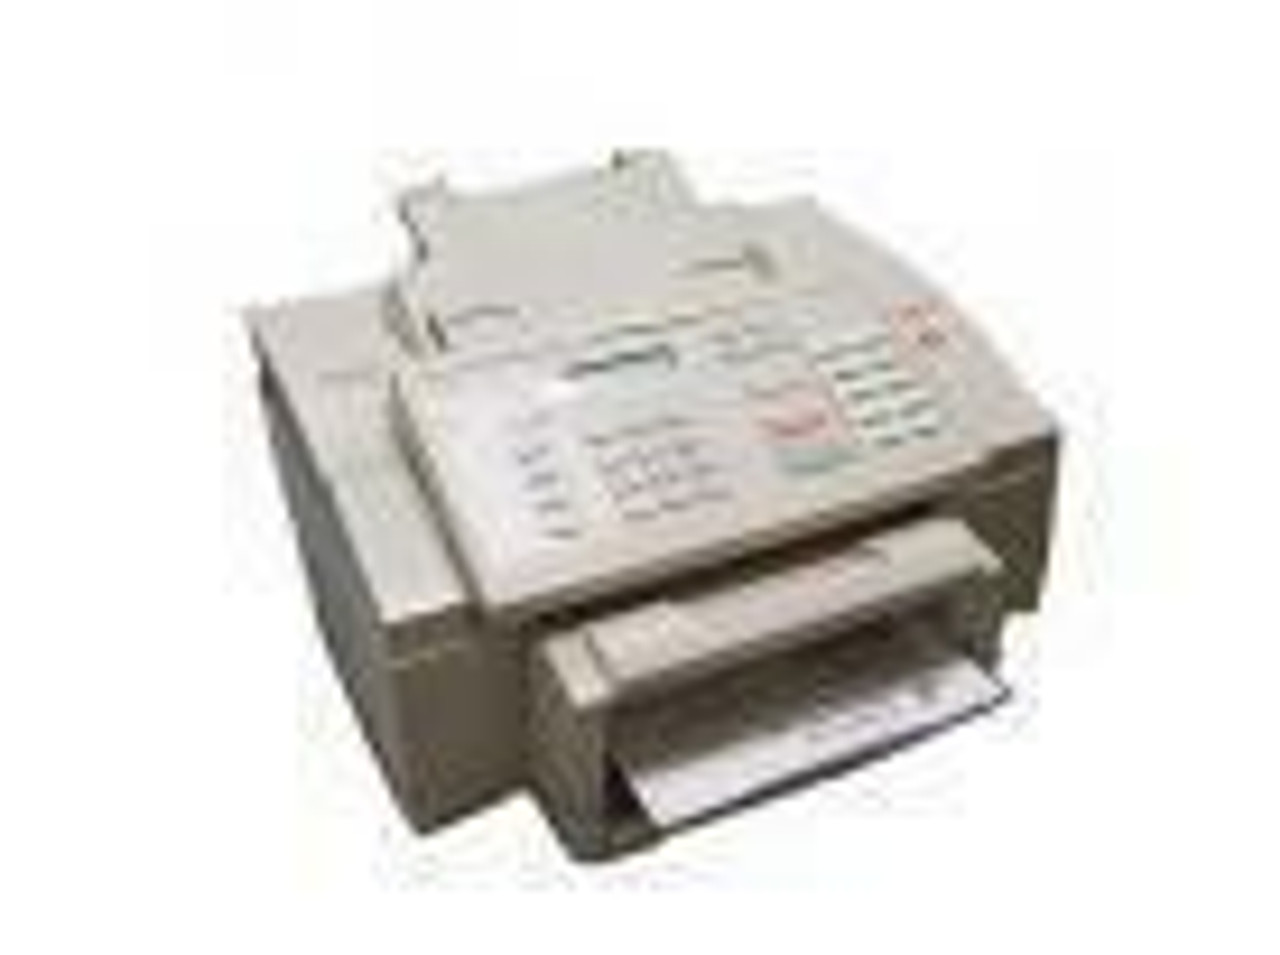 HP Fax 300